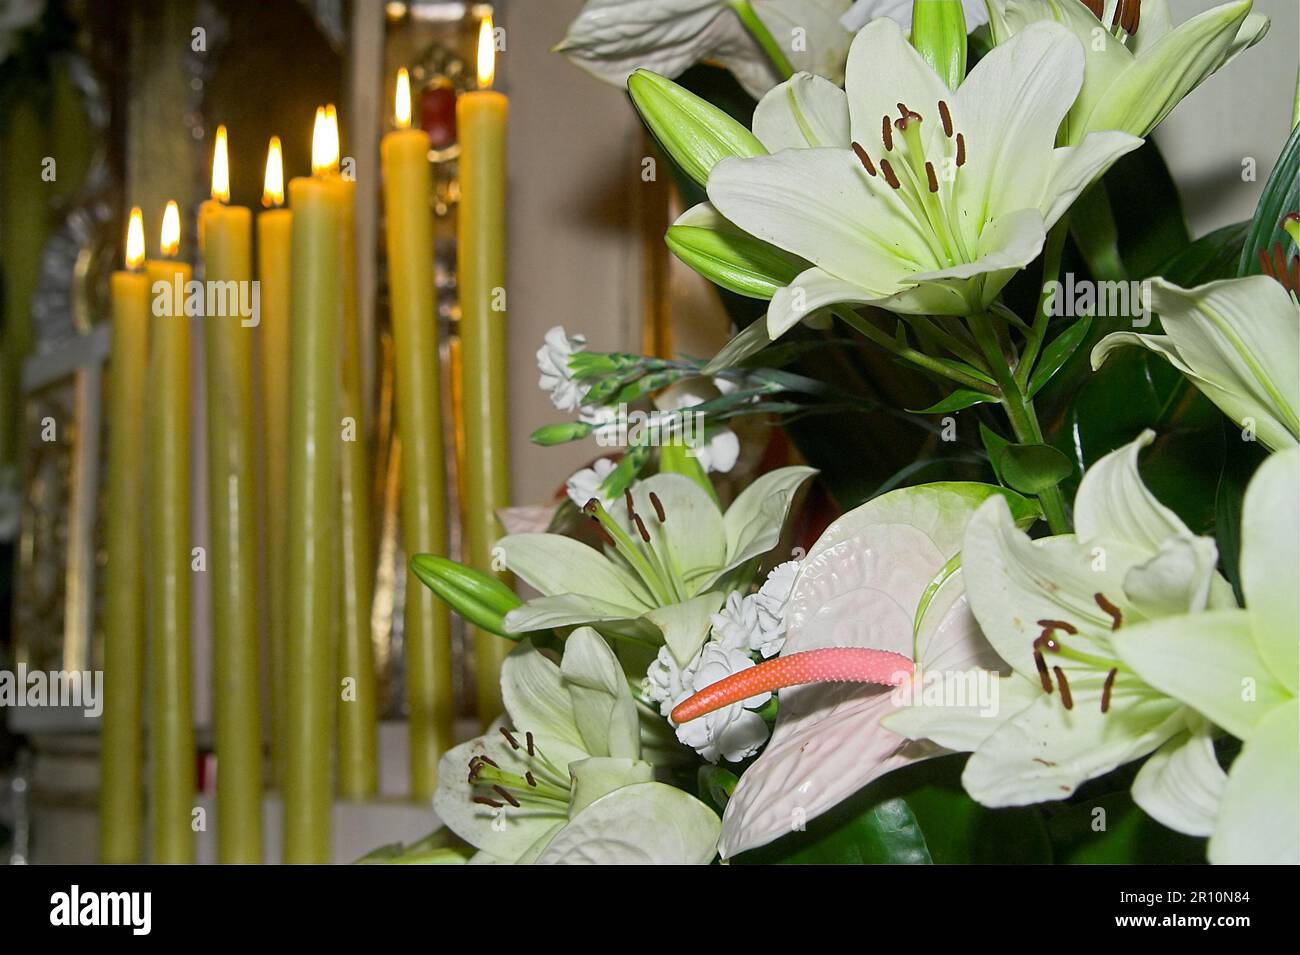 Pologne, Polen, Polska; bougies de cire brûlantes et arrangement floral (lys et anthurium); Brennende Wachskerzen und Blumenarrangement (Lilie) Banque D'Images